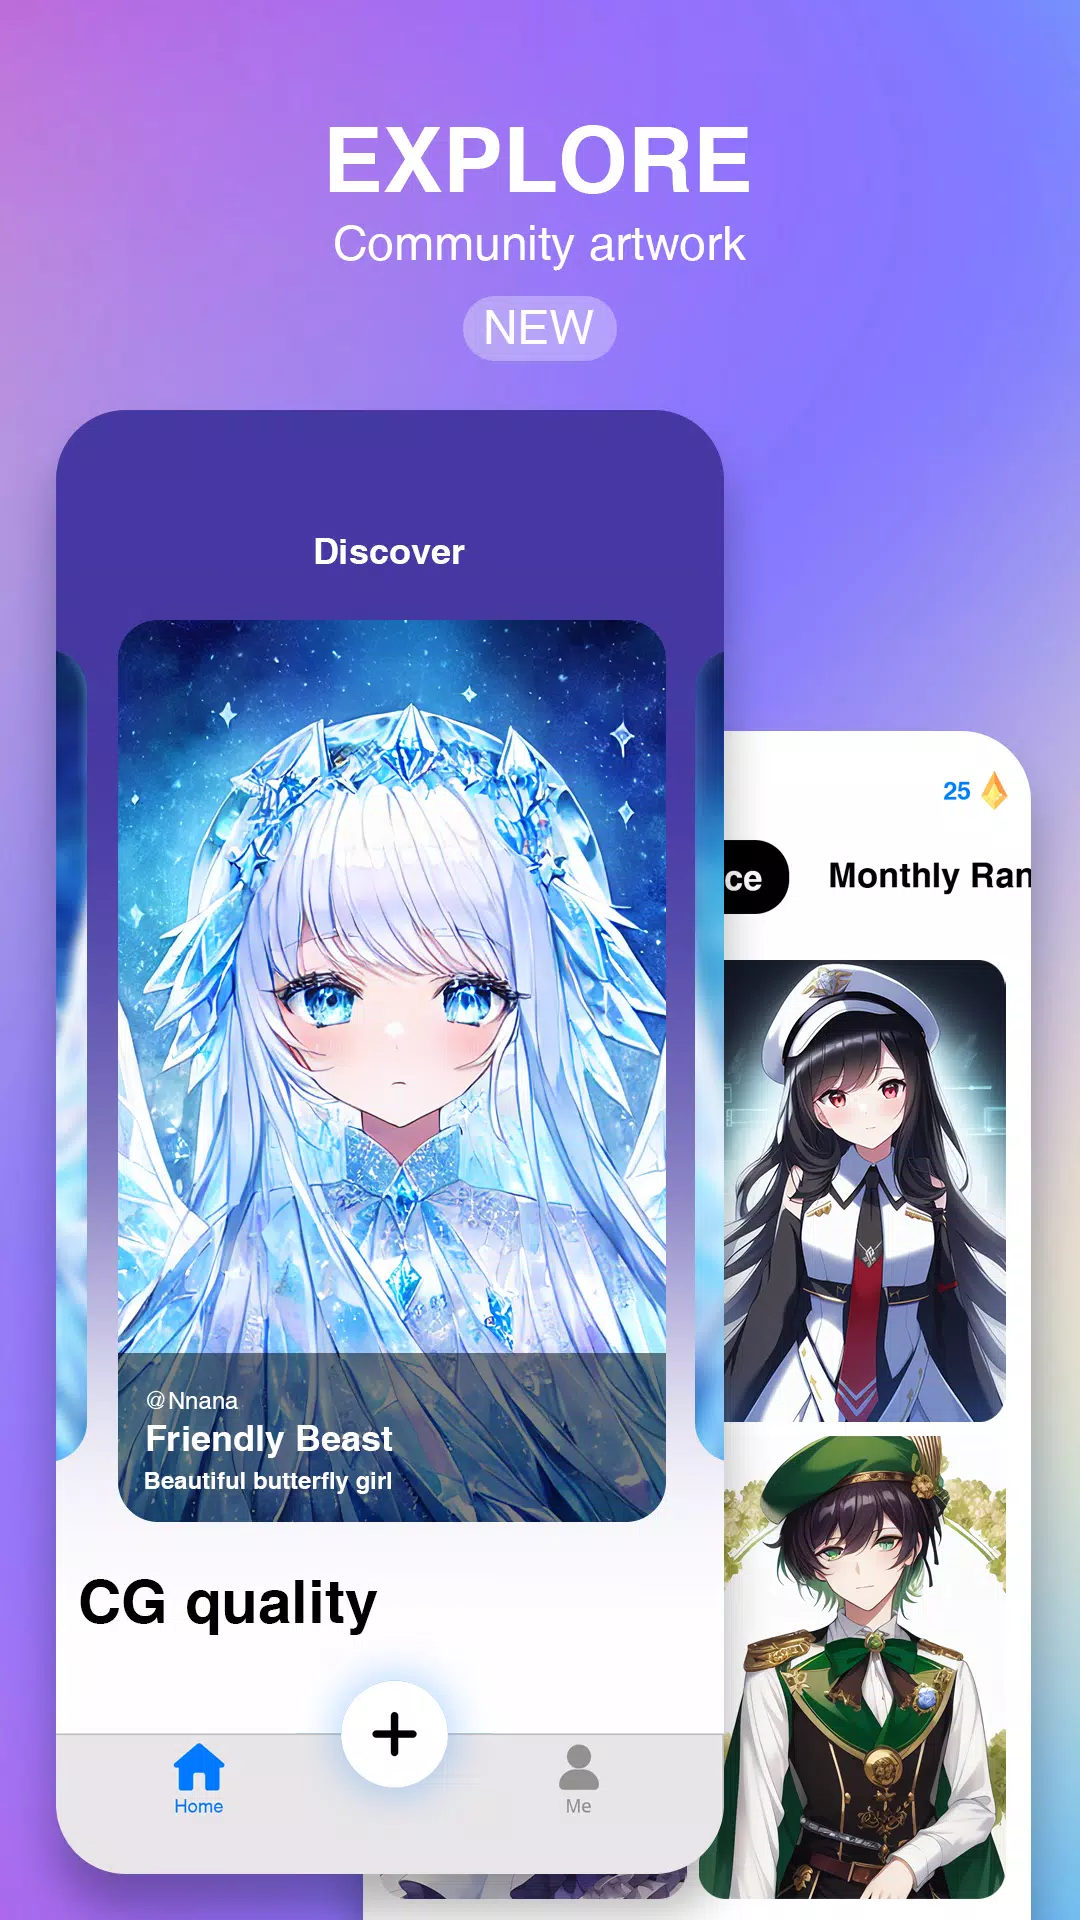 AI Anime Filter Apk Mod Unlock Premium